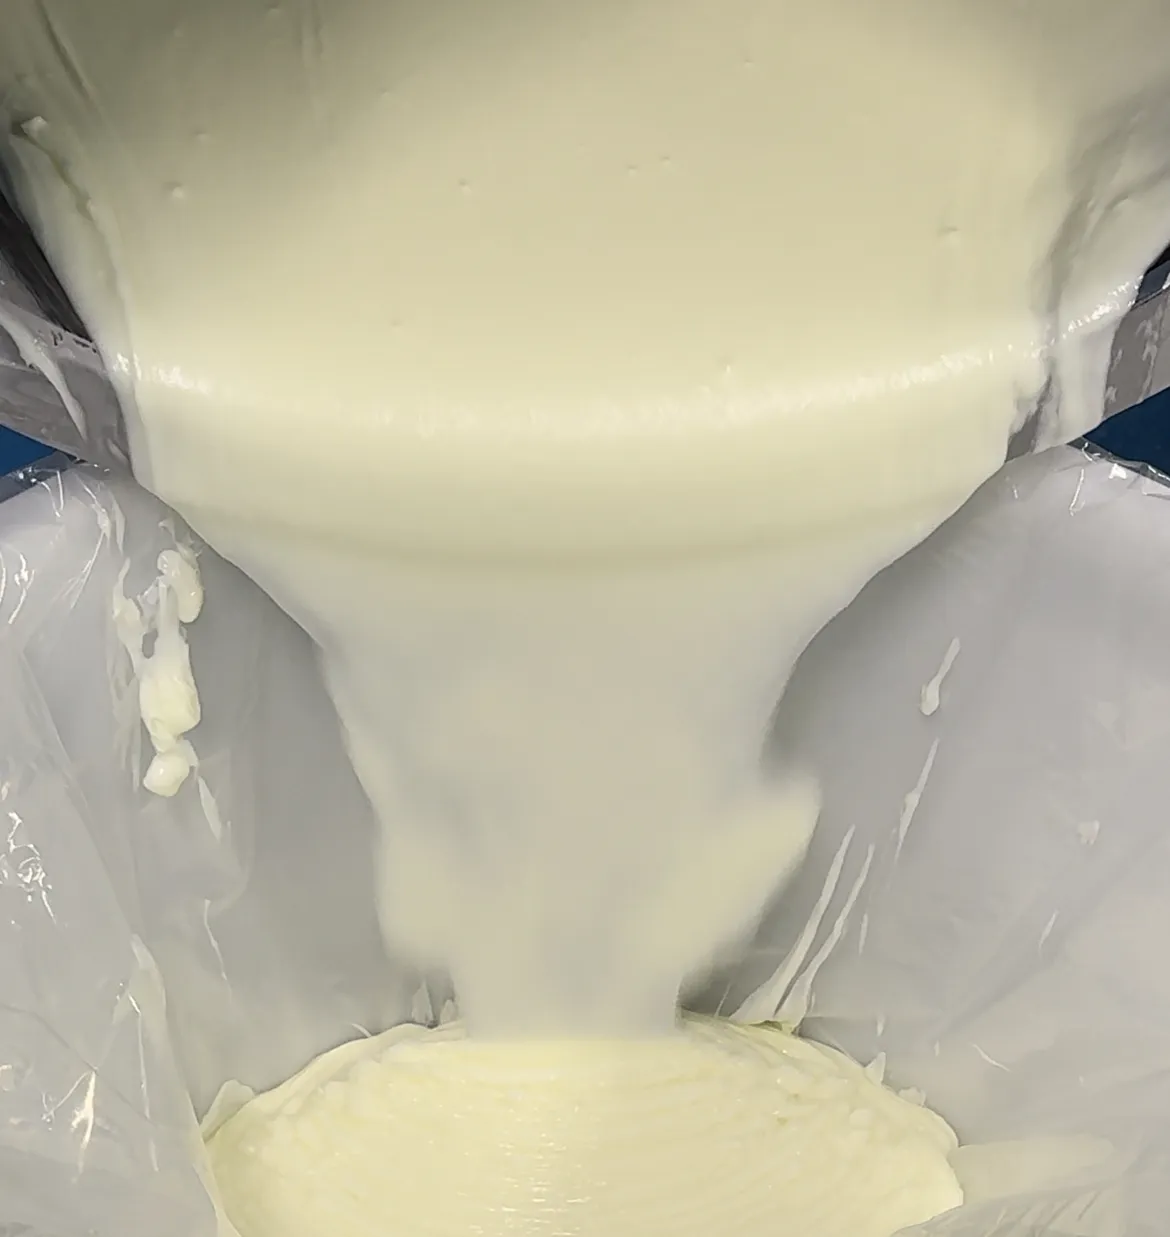 Oem bán buôn mặt kem & lotion làm trắng và mụn trứng cá loại bỏ sản phẩm